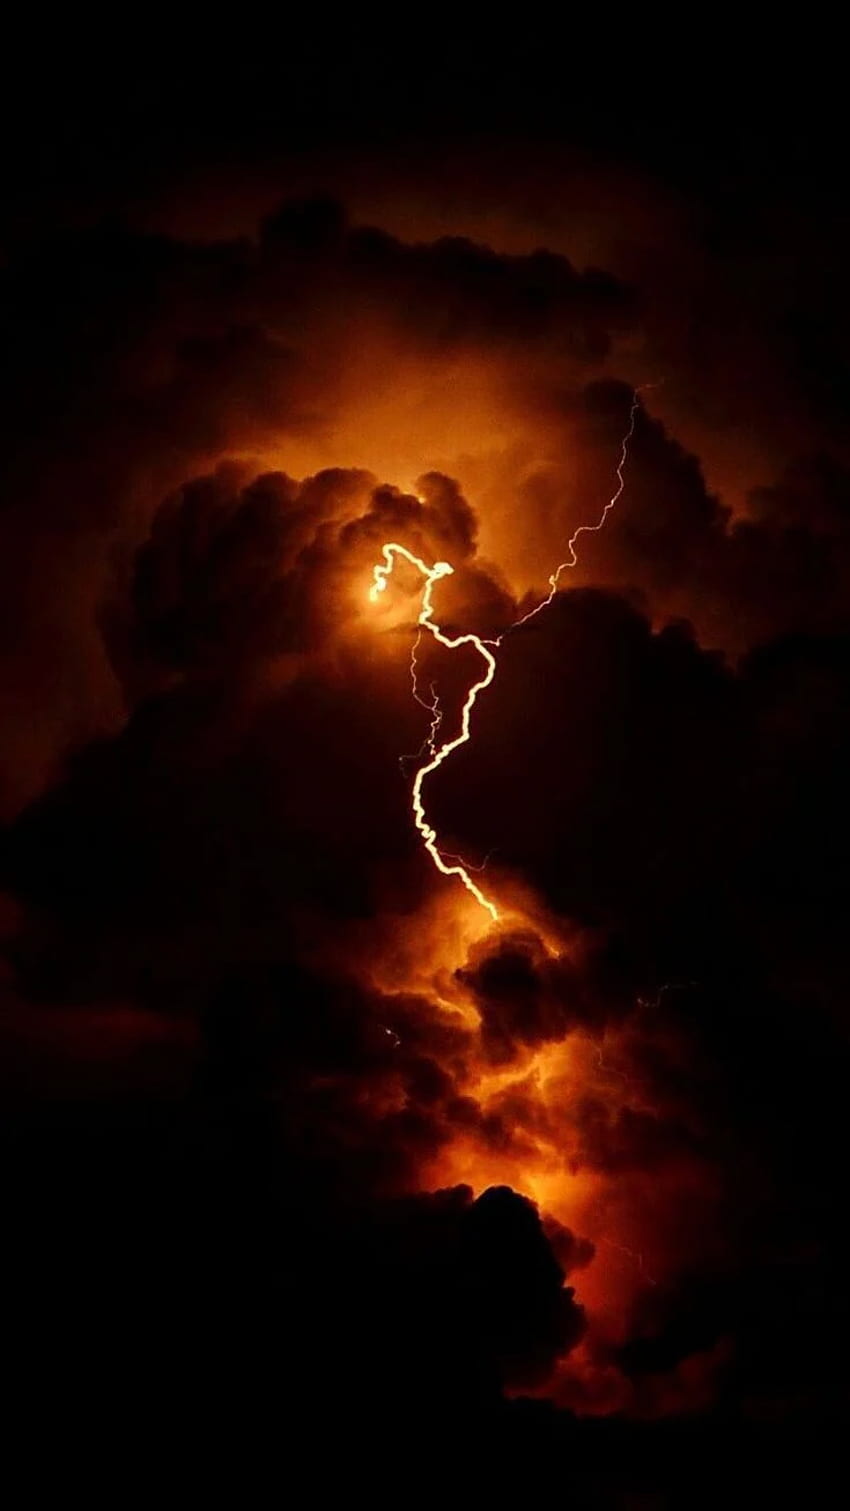 Lightning in the sky at night - Dark orange, lightning